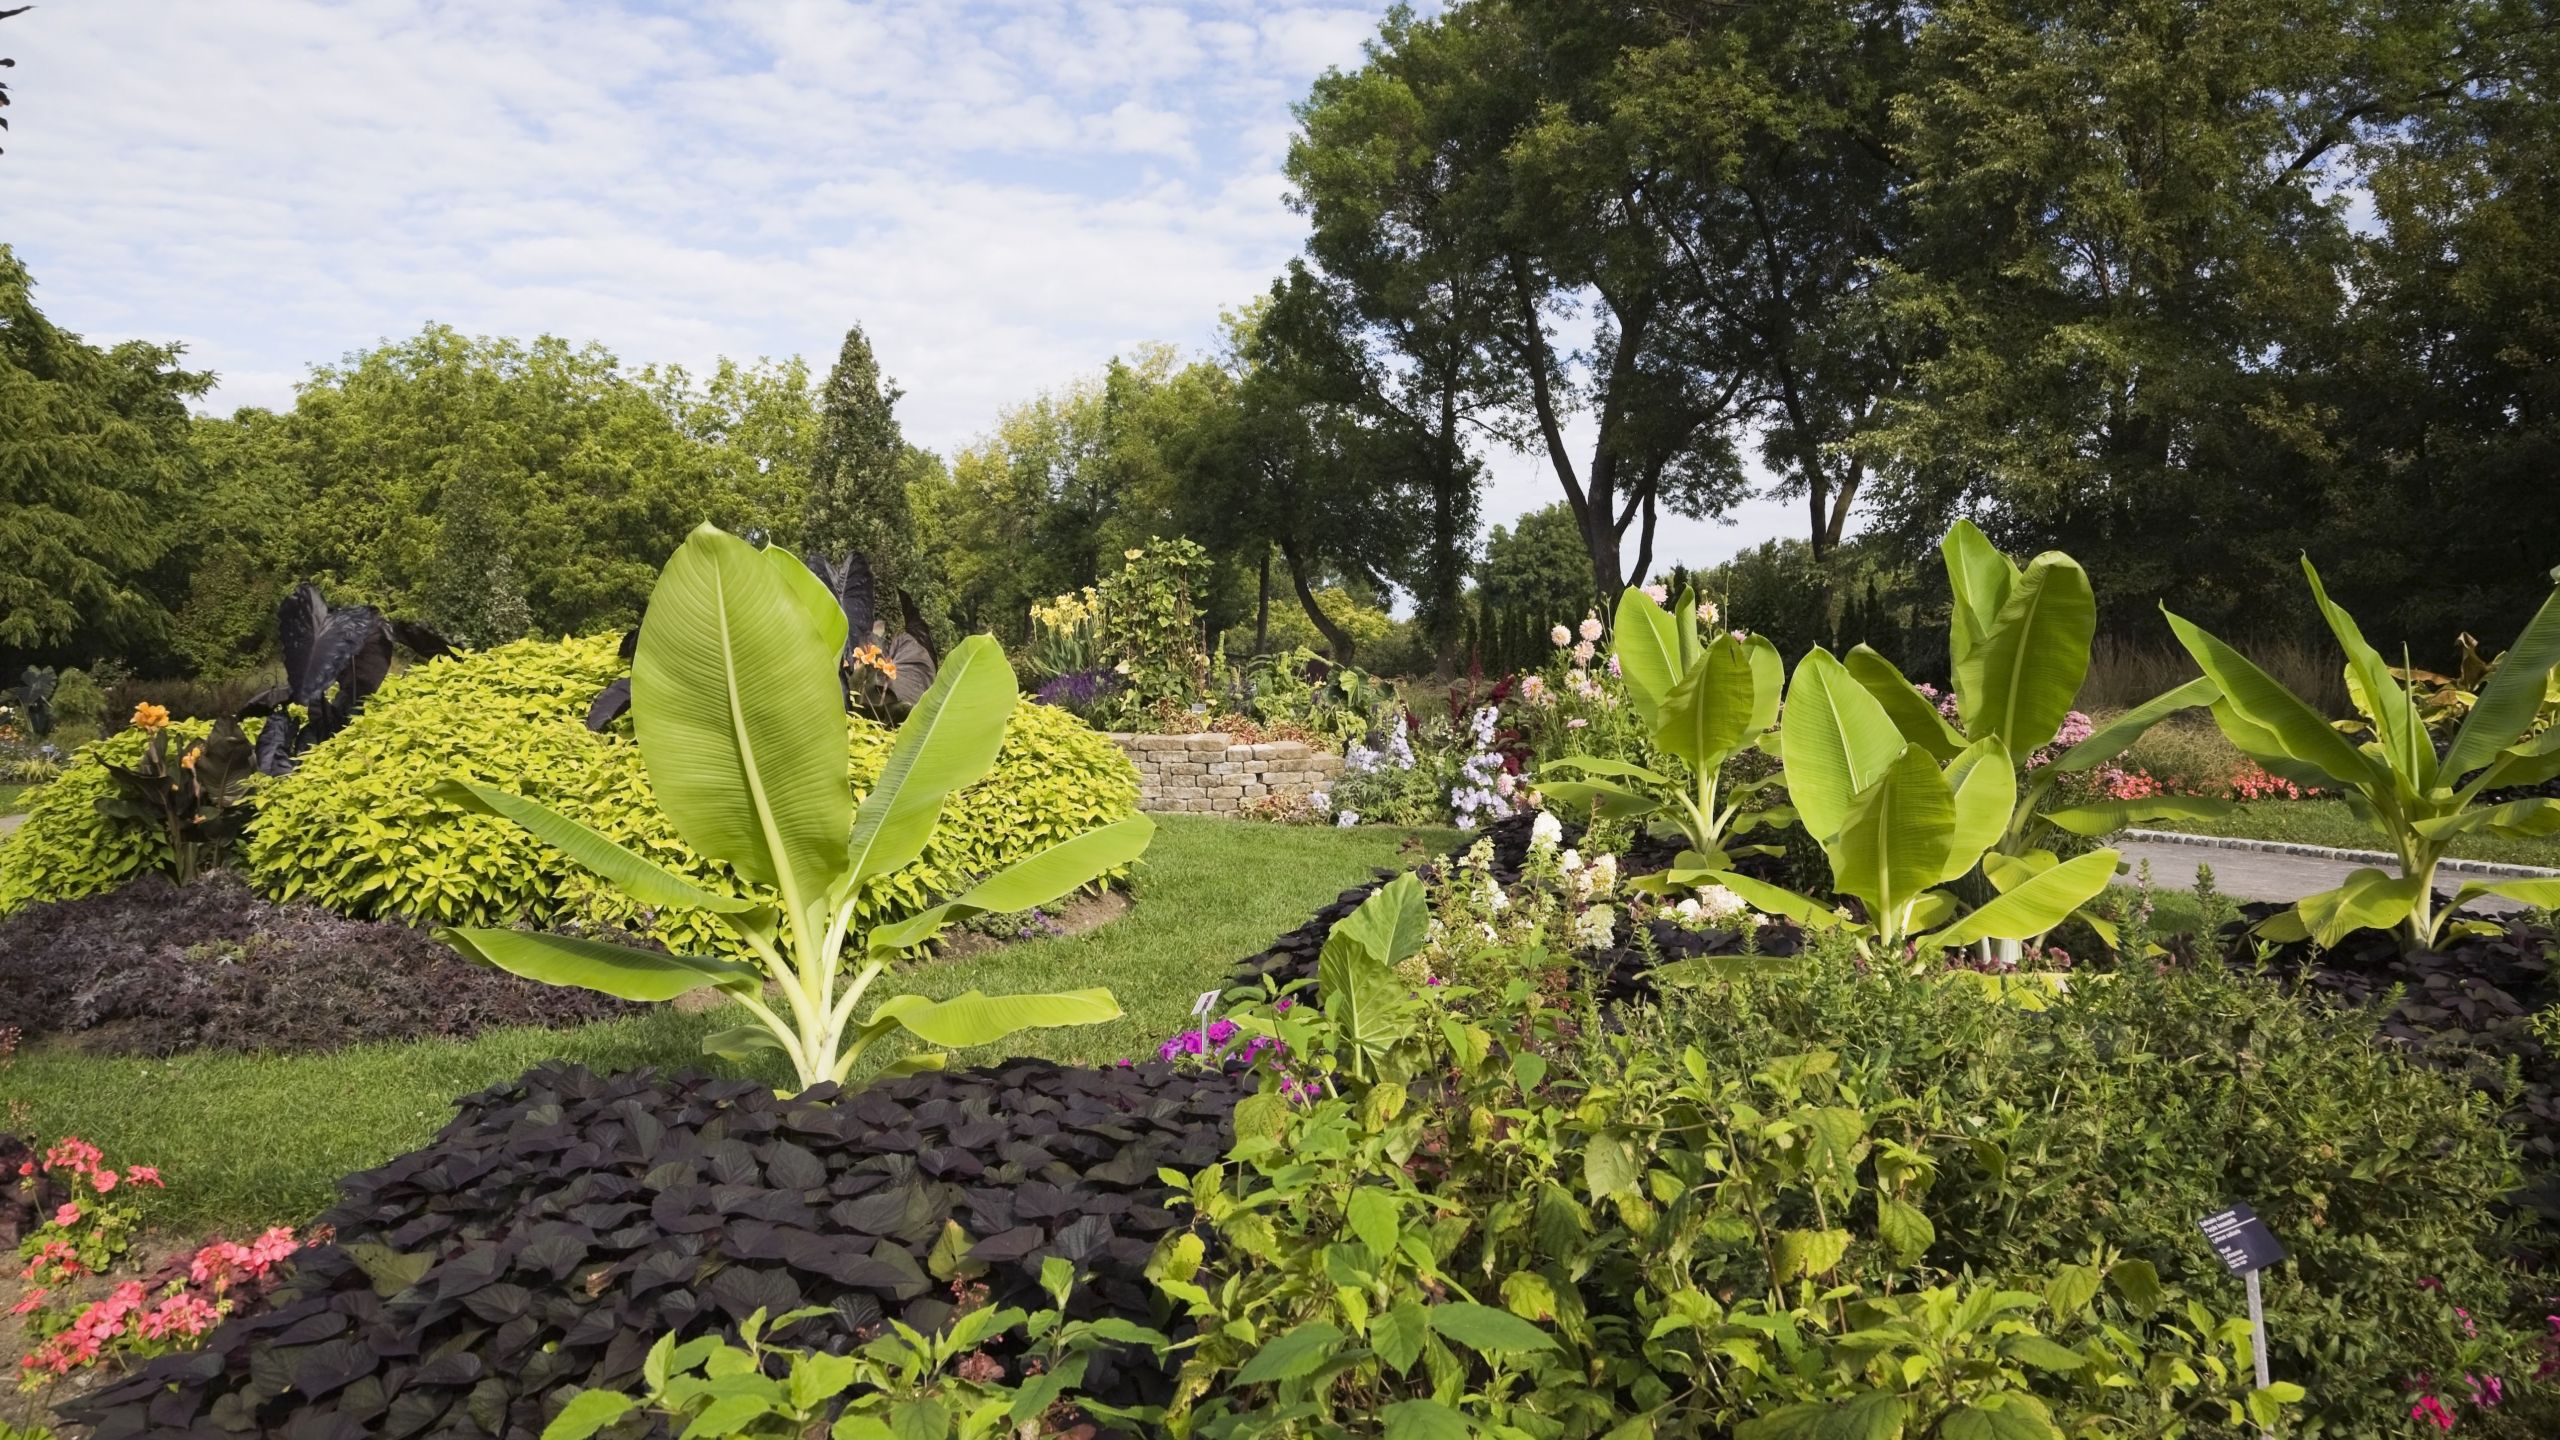 montreal botanical garden in summer montreal quebec canada 5c355e2c46e0fb b